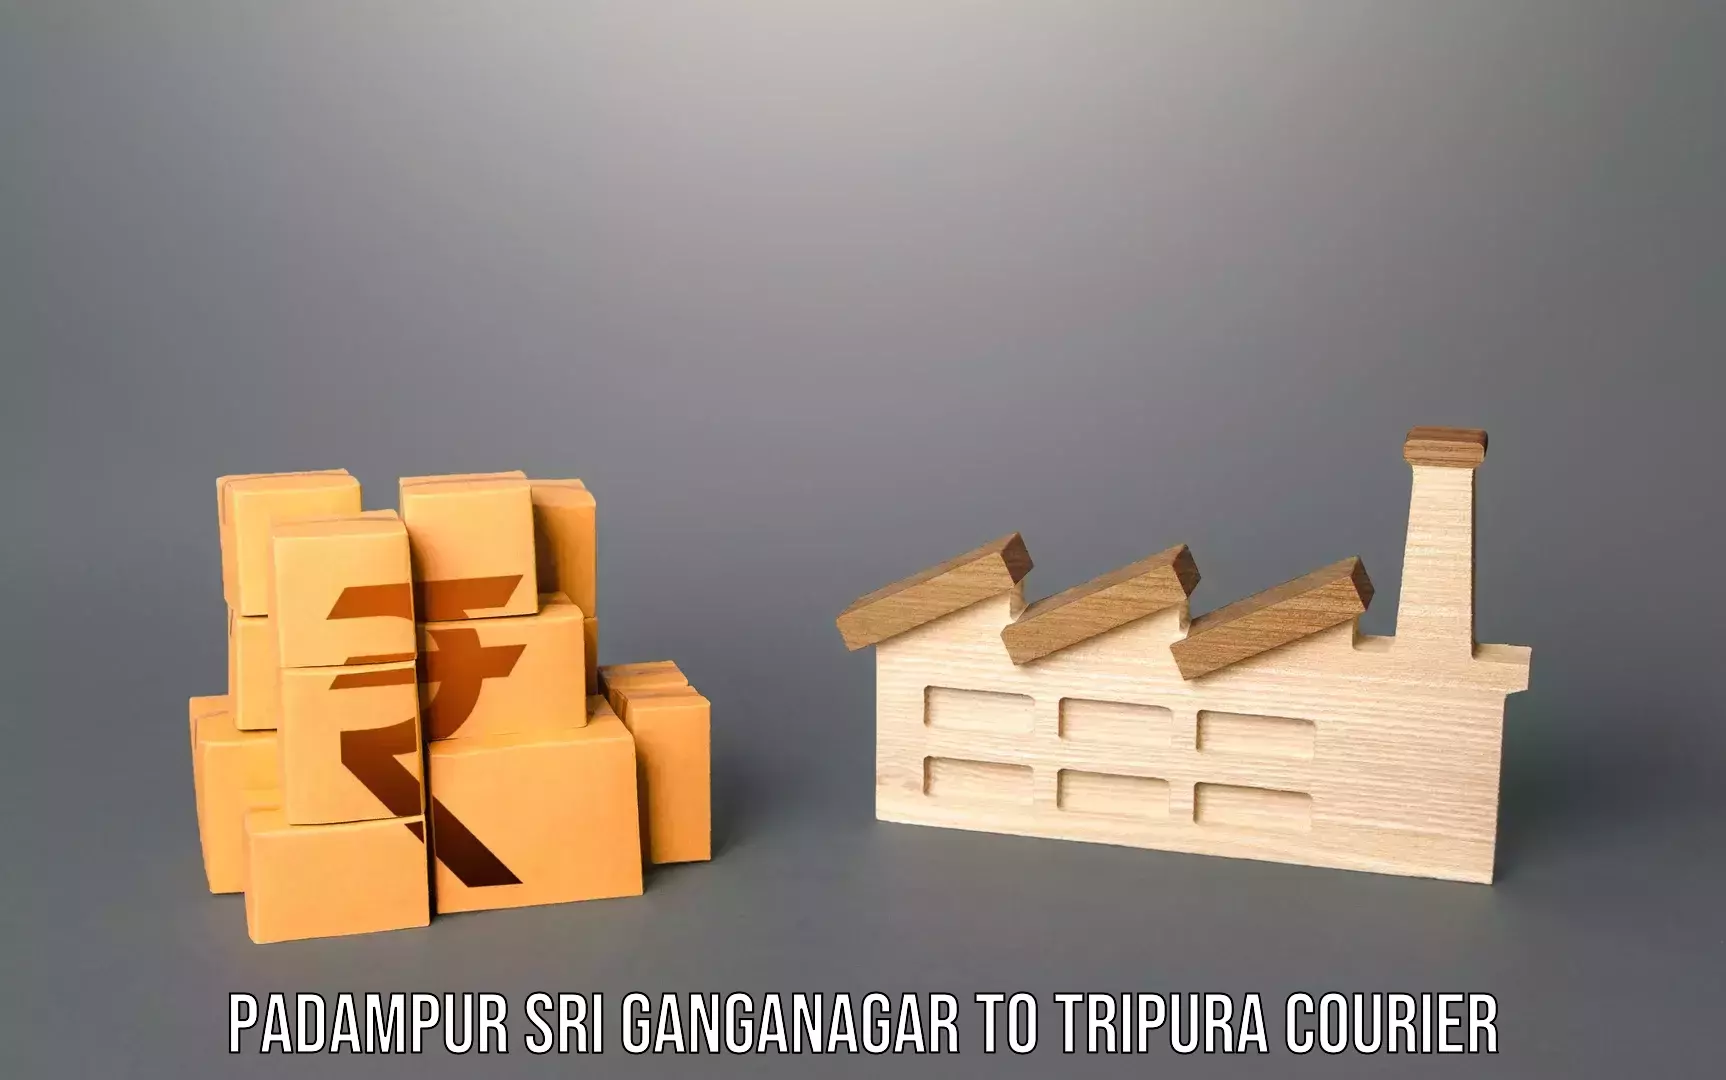 Luggage delivery calculator Padampur Sri Ganganagar to Udaipur Tripura